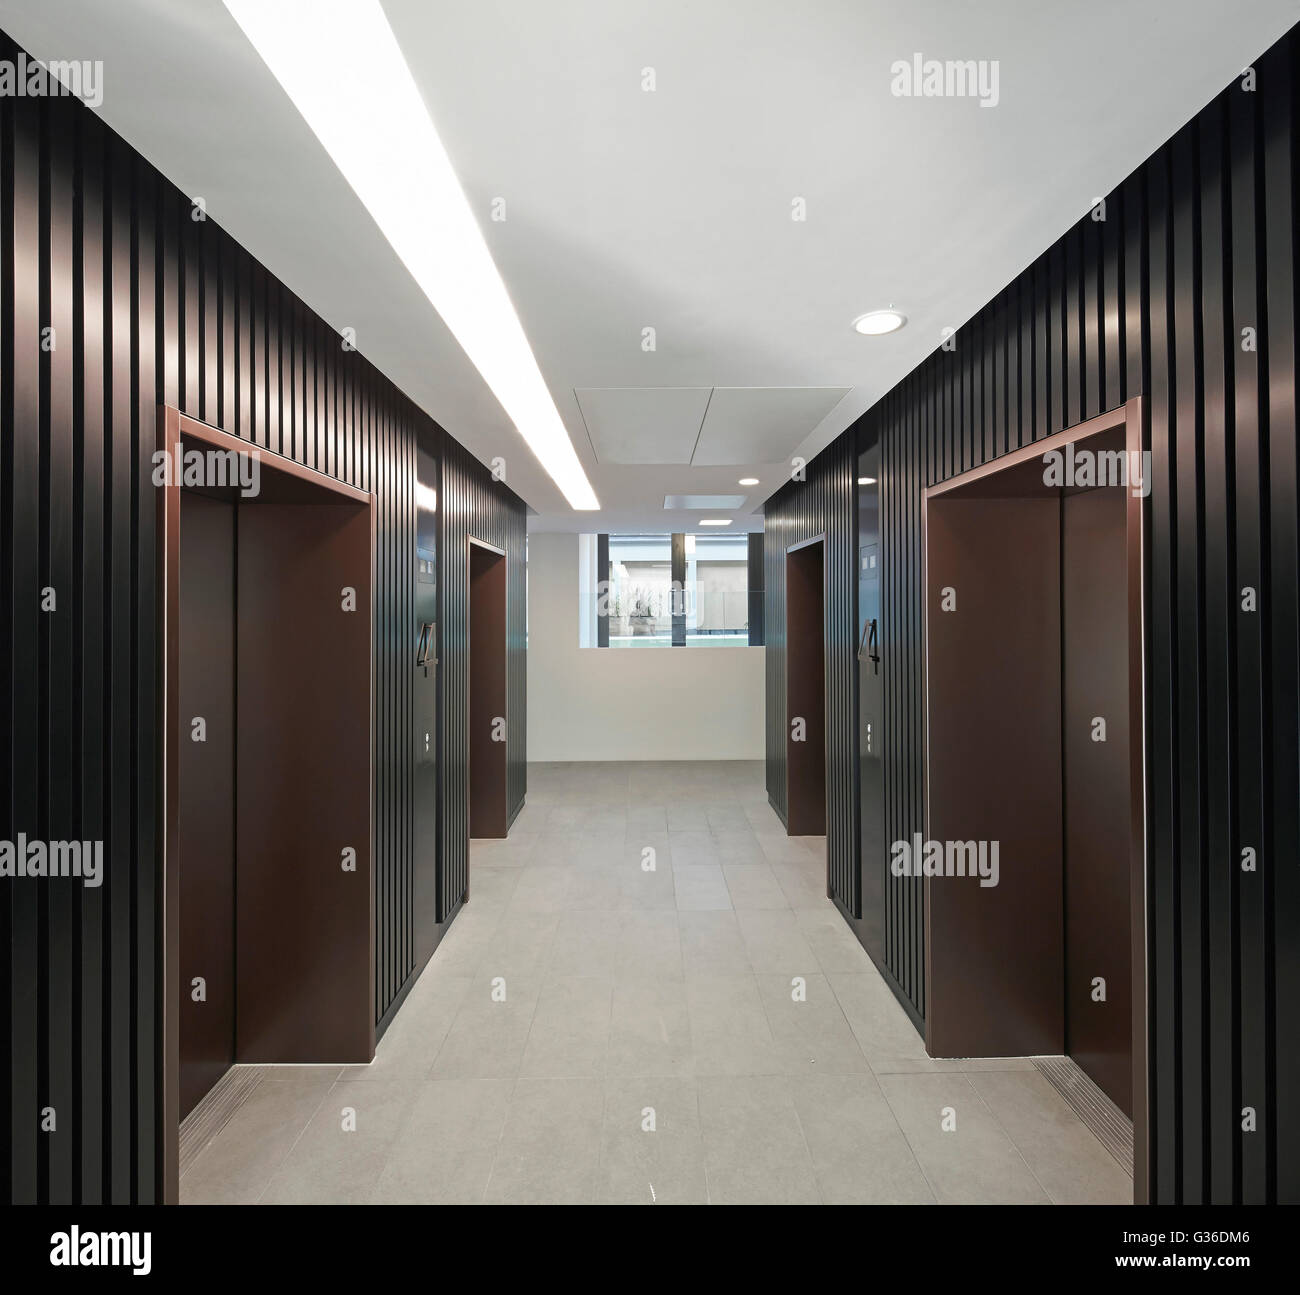 Elevator waiting area. Commodity Quay, London, United Kingdom. Architect: BuckleyGrayYeoman, 2014. Stock Photo